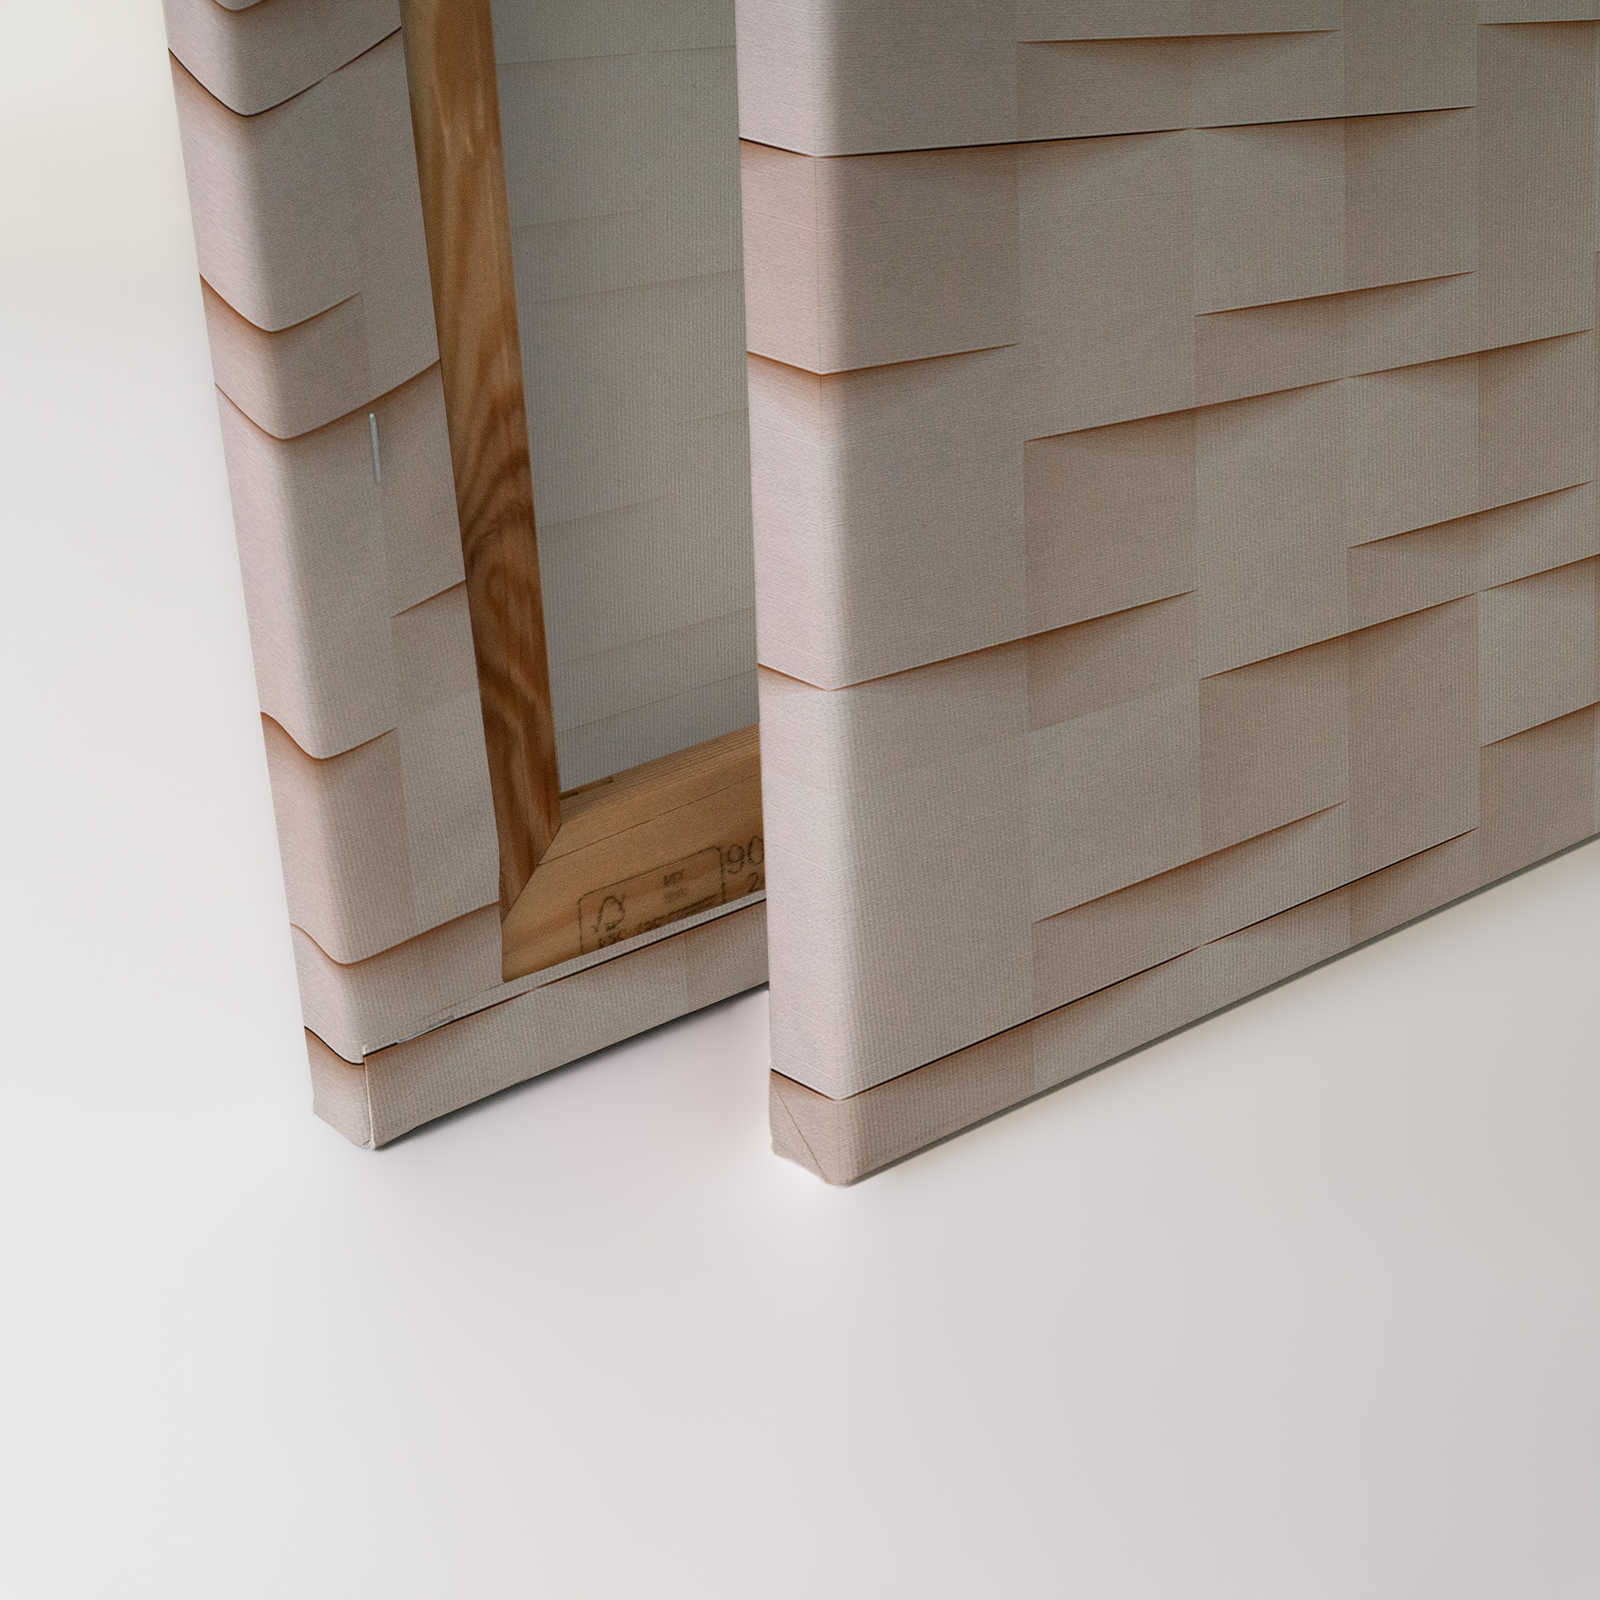             Paper House 1 - Toile 3D structure papier origami plissé - 1,20 m x 0,80 m
        